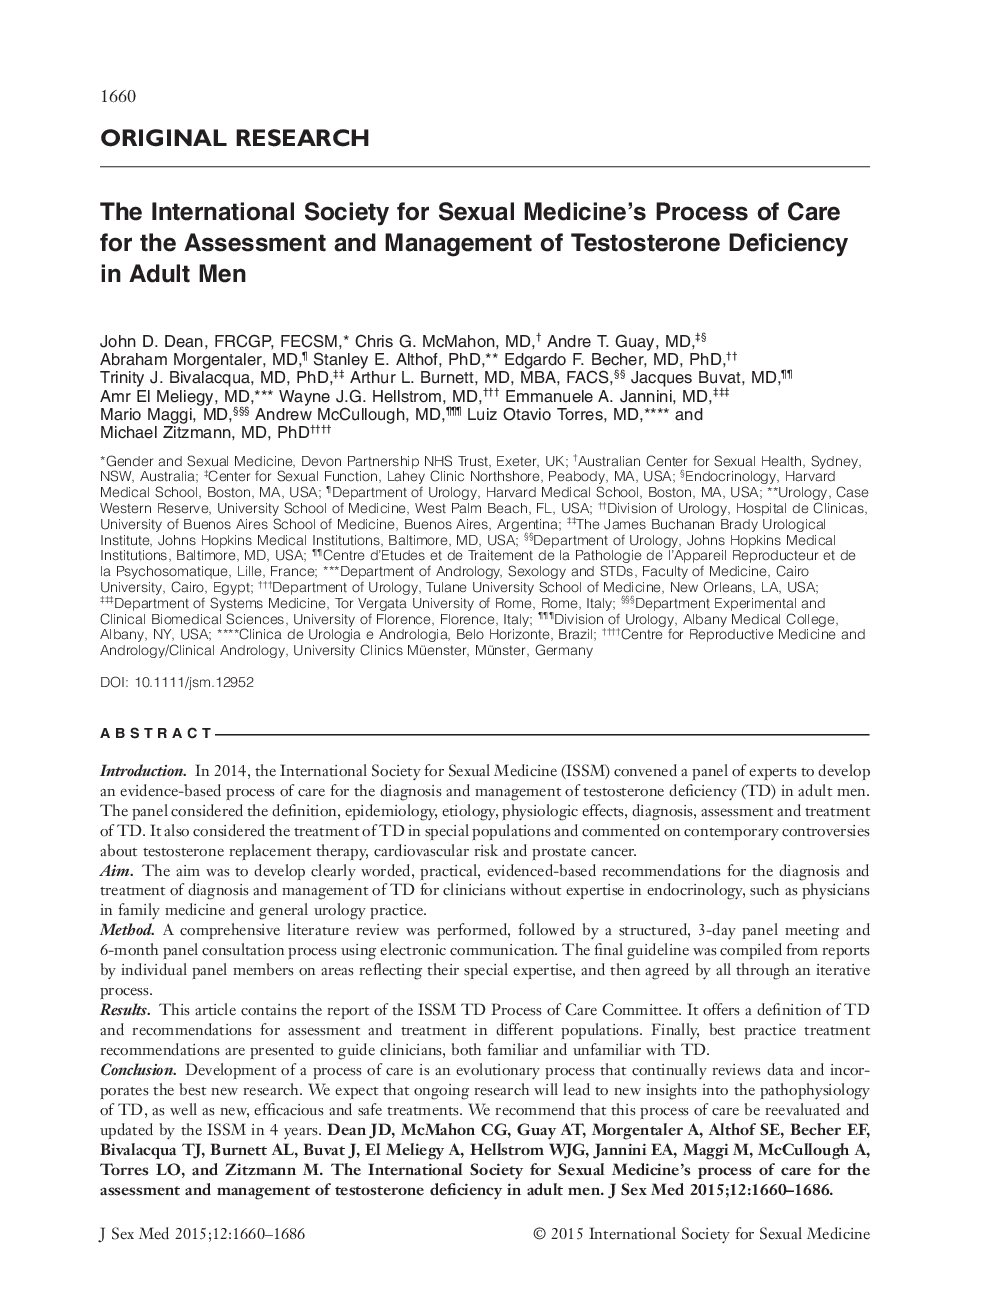 انجمن بین المللی مراقبت های پزشکی جنسی برای ارزیابی و مدیریت کمبود تستوسترون در مردان بزرگسال 